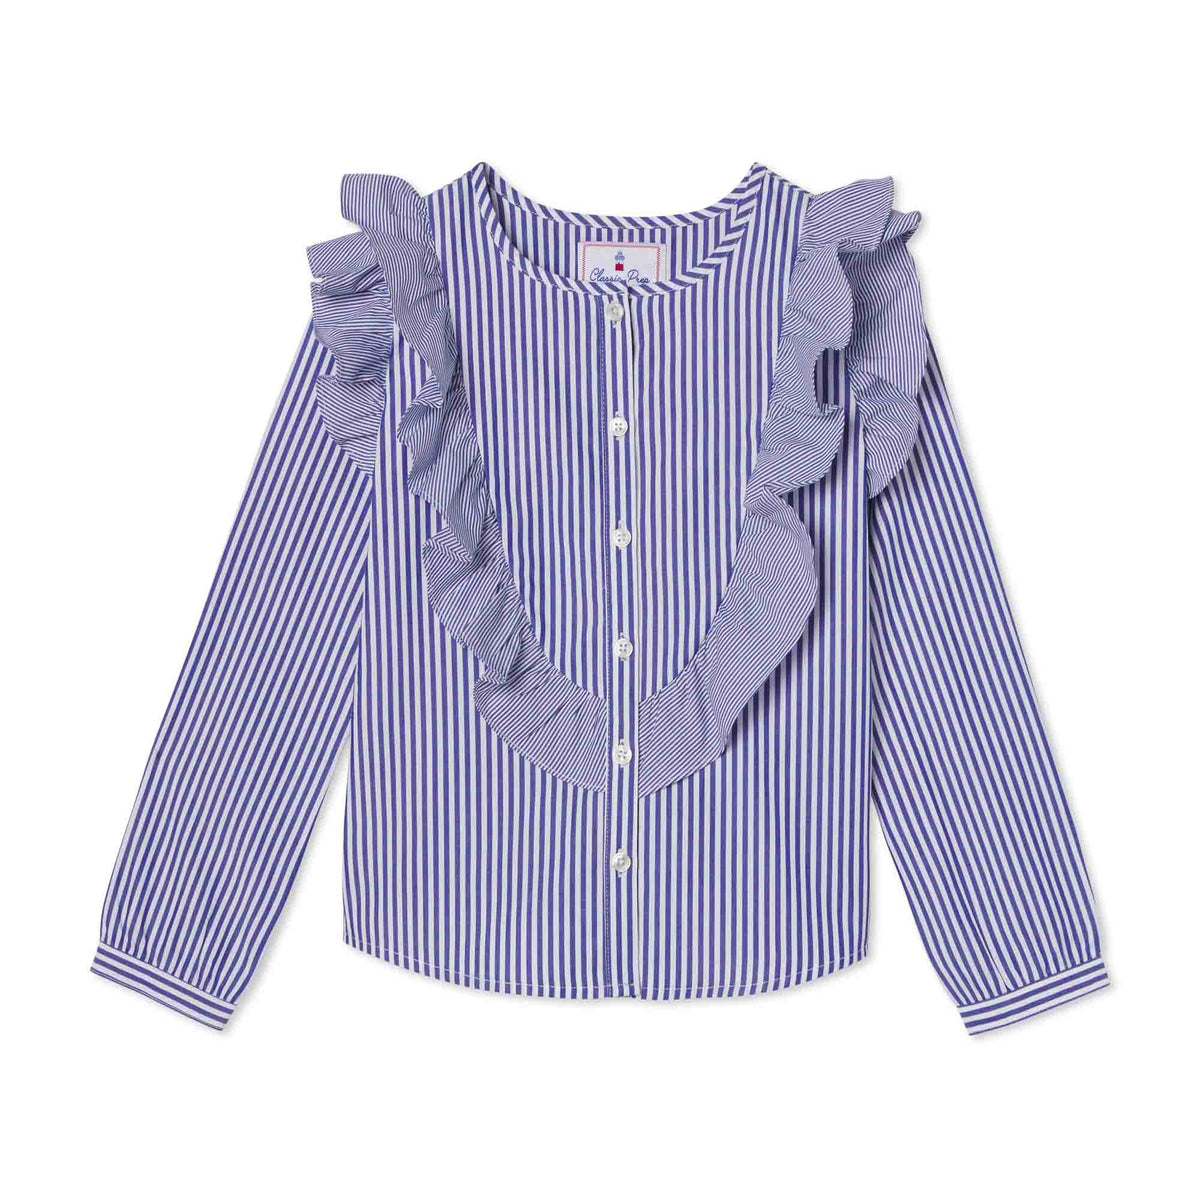 Classic and Preppy Gemma Top, Roman Stripe-Shirts and Tops-Roman Stripe-2T-CPC - Classic Prep Childrenswear